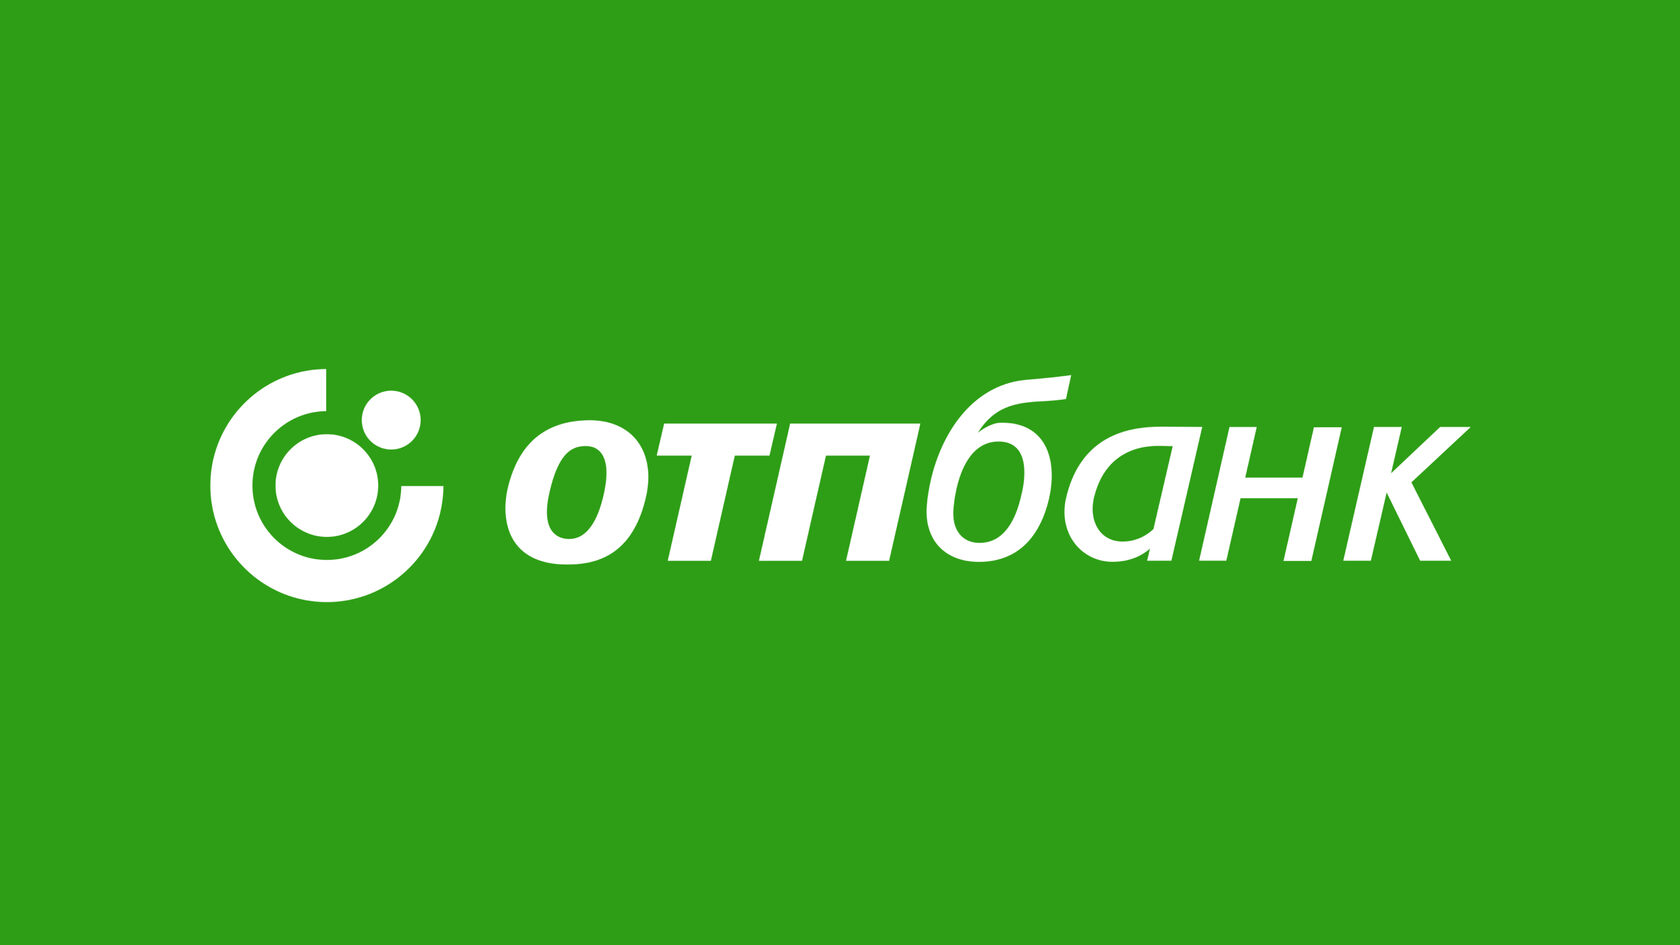 R otpbank ru. ОТП банк. ОТП логотип. АО ОТП банк. АО ОТП банк логотип.